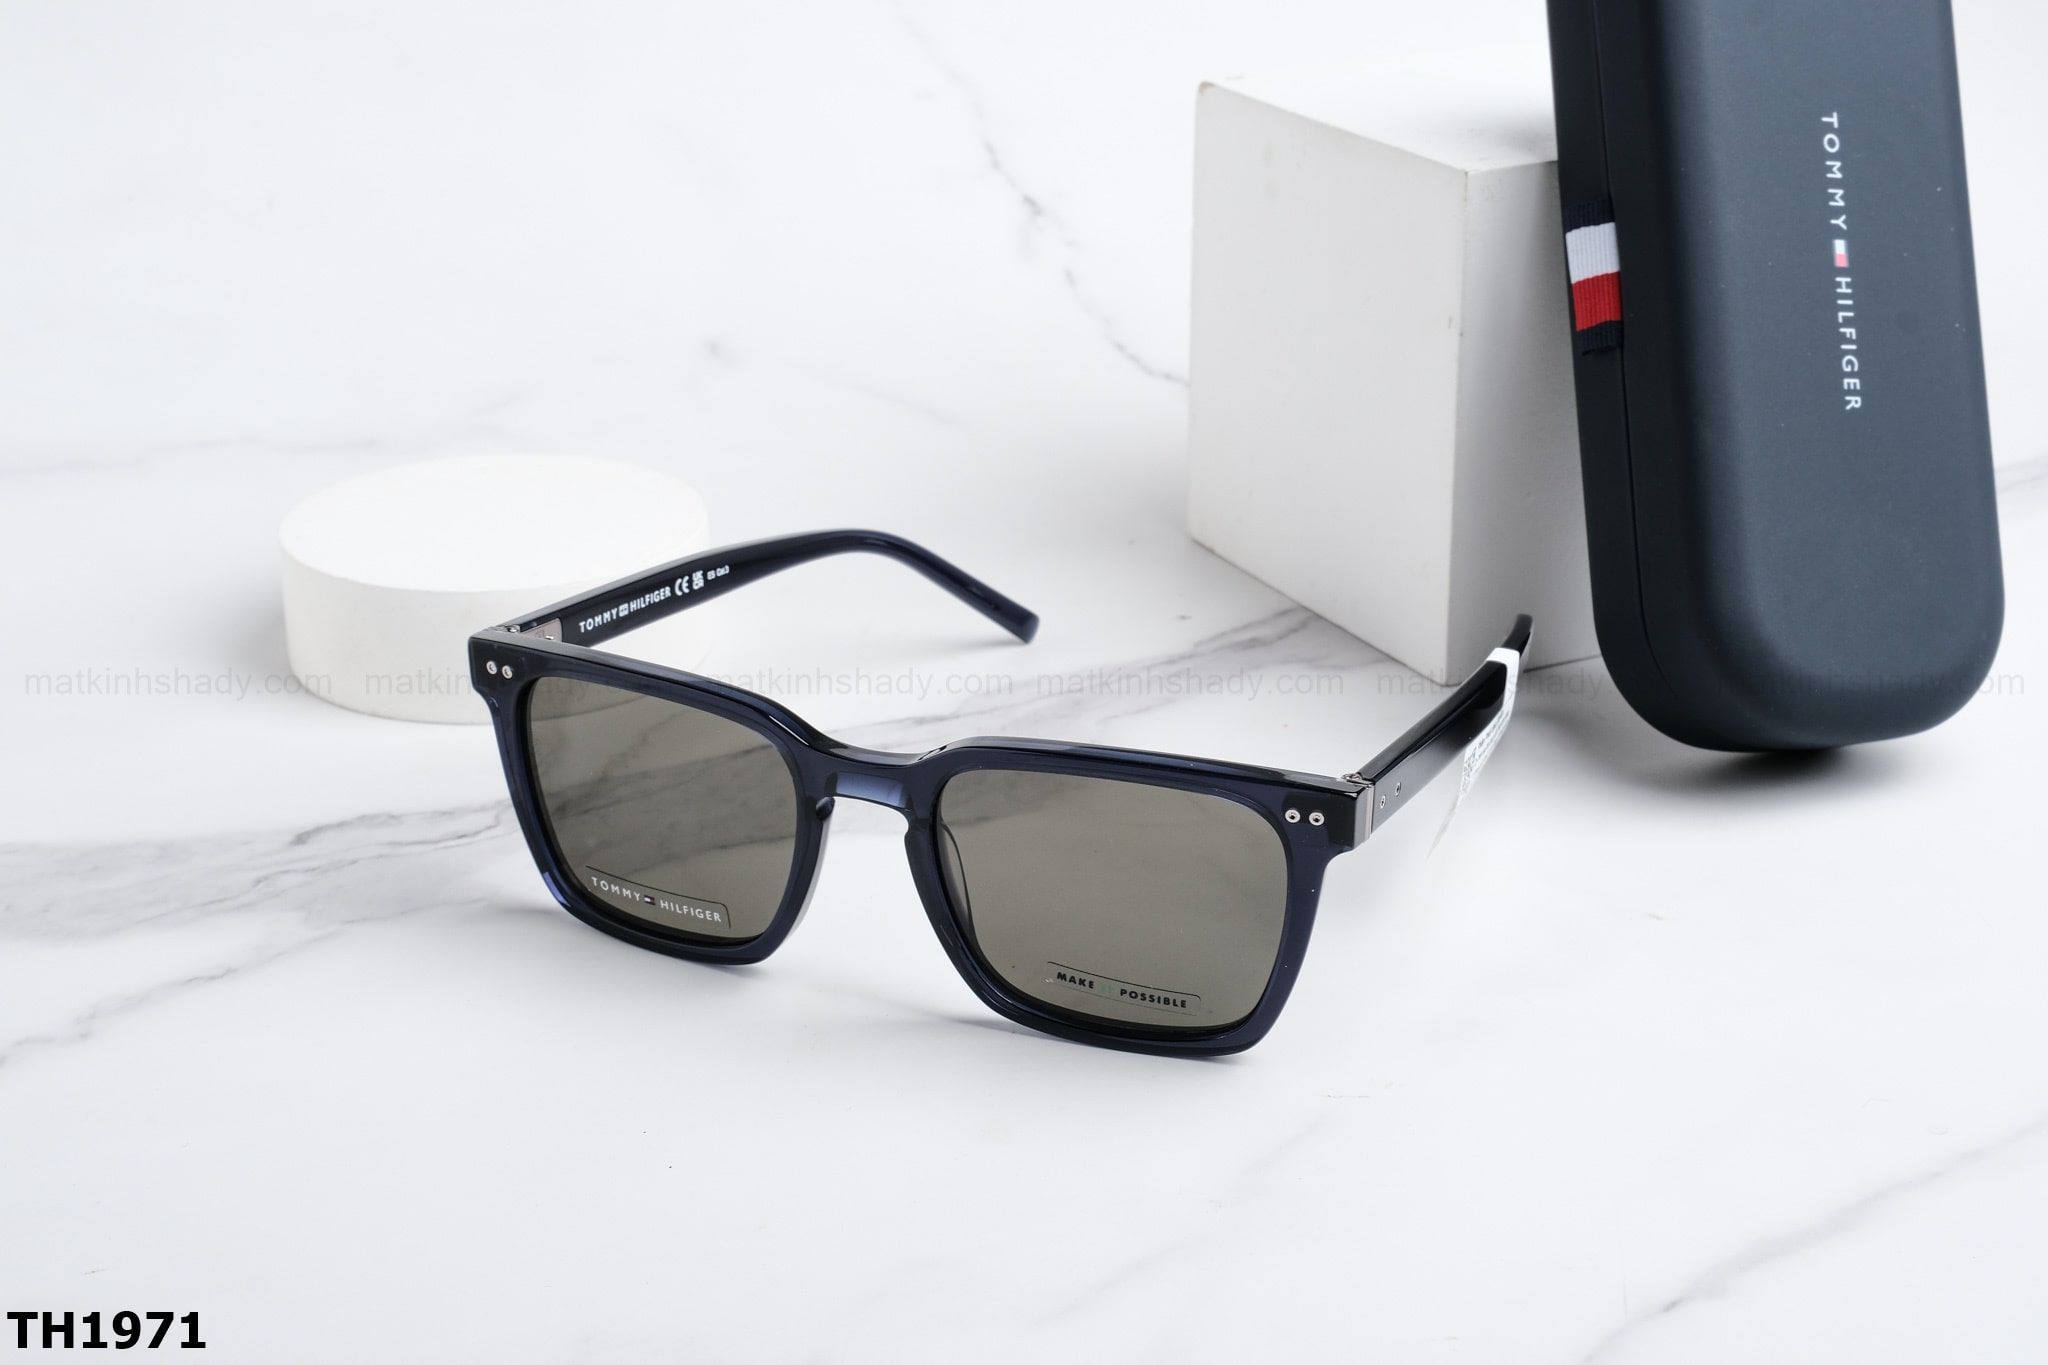  Tommy Hilfiger Eyewear - Sunglasses - TH1971 